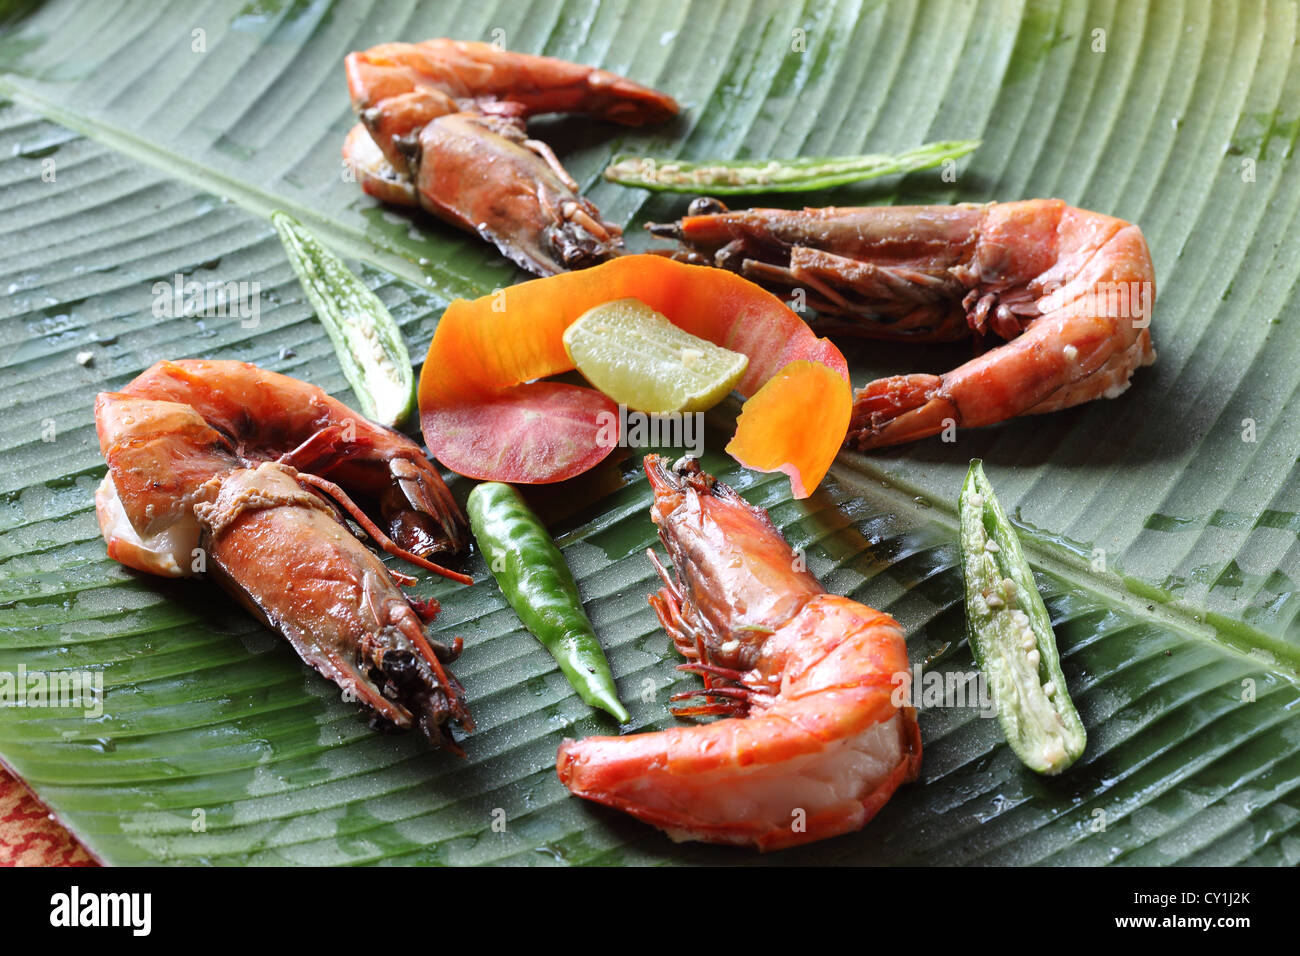 Crevettes frites est un des plats frits populaire au Kerala ainsi que des restaurants dans le monde entier. C'est Style Kerala Crevettes épicées fry. Banque D'Images